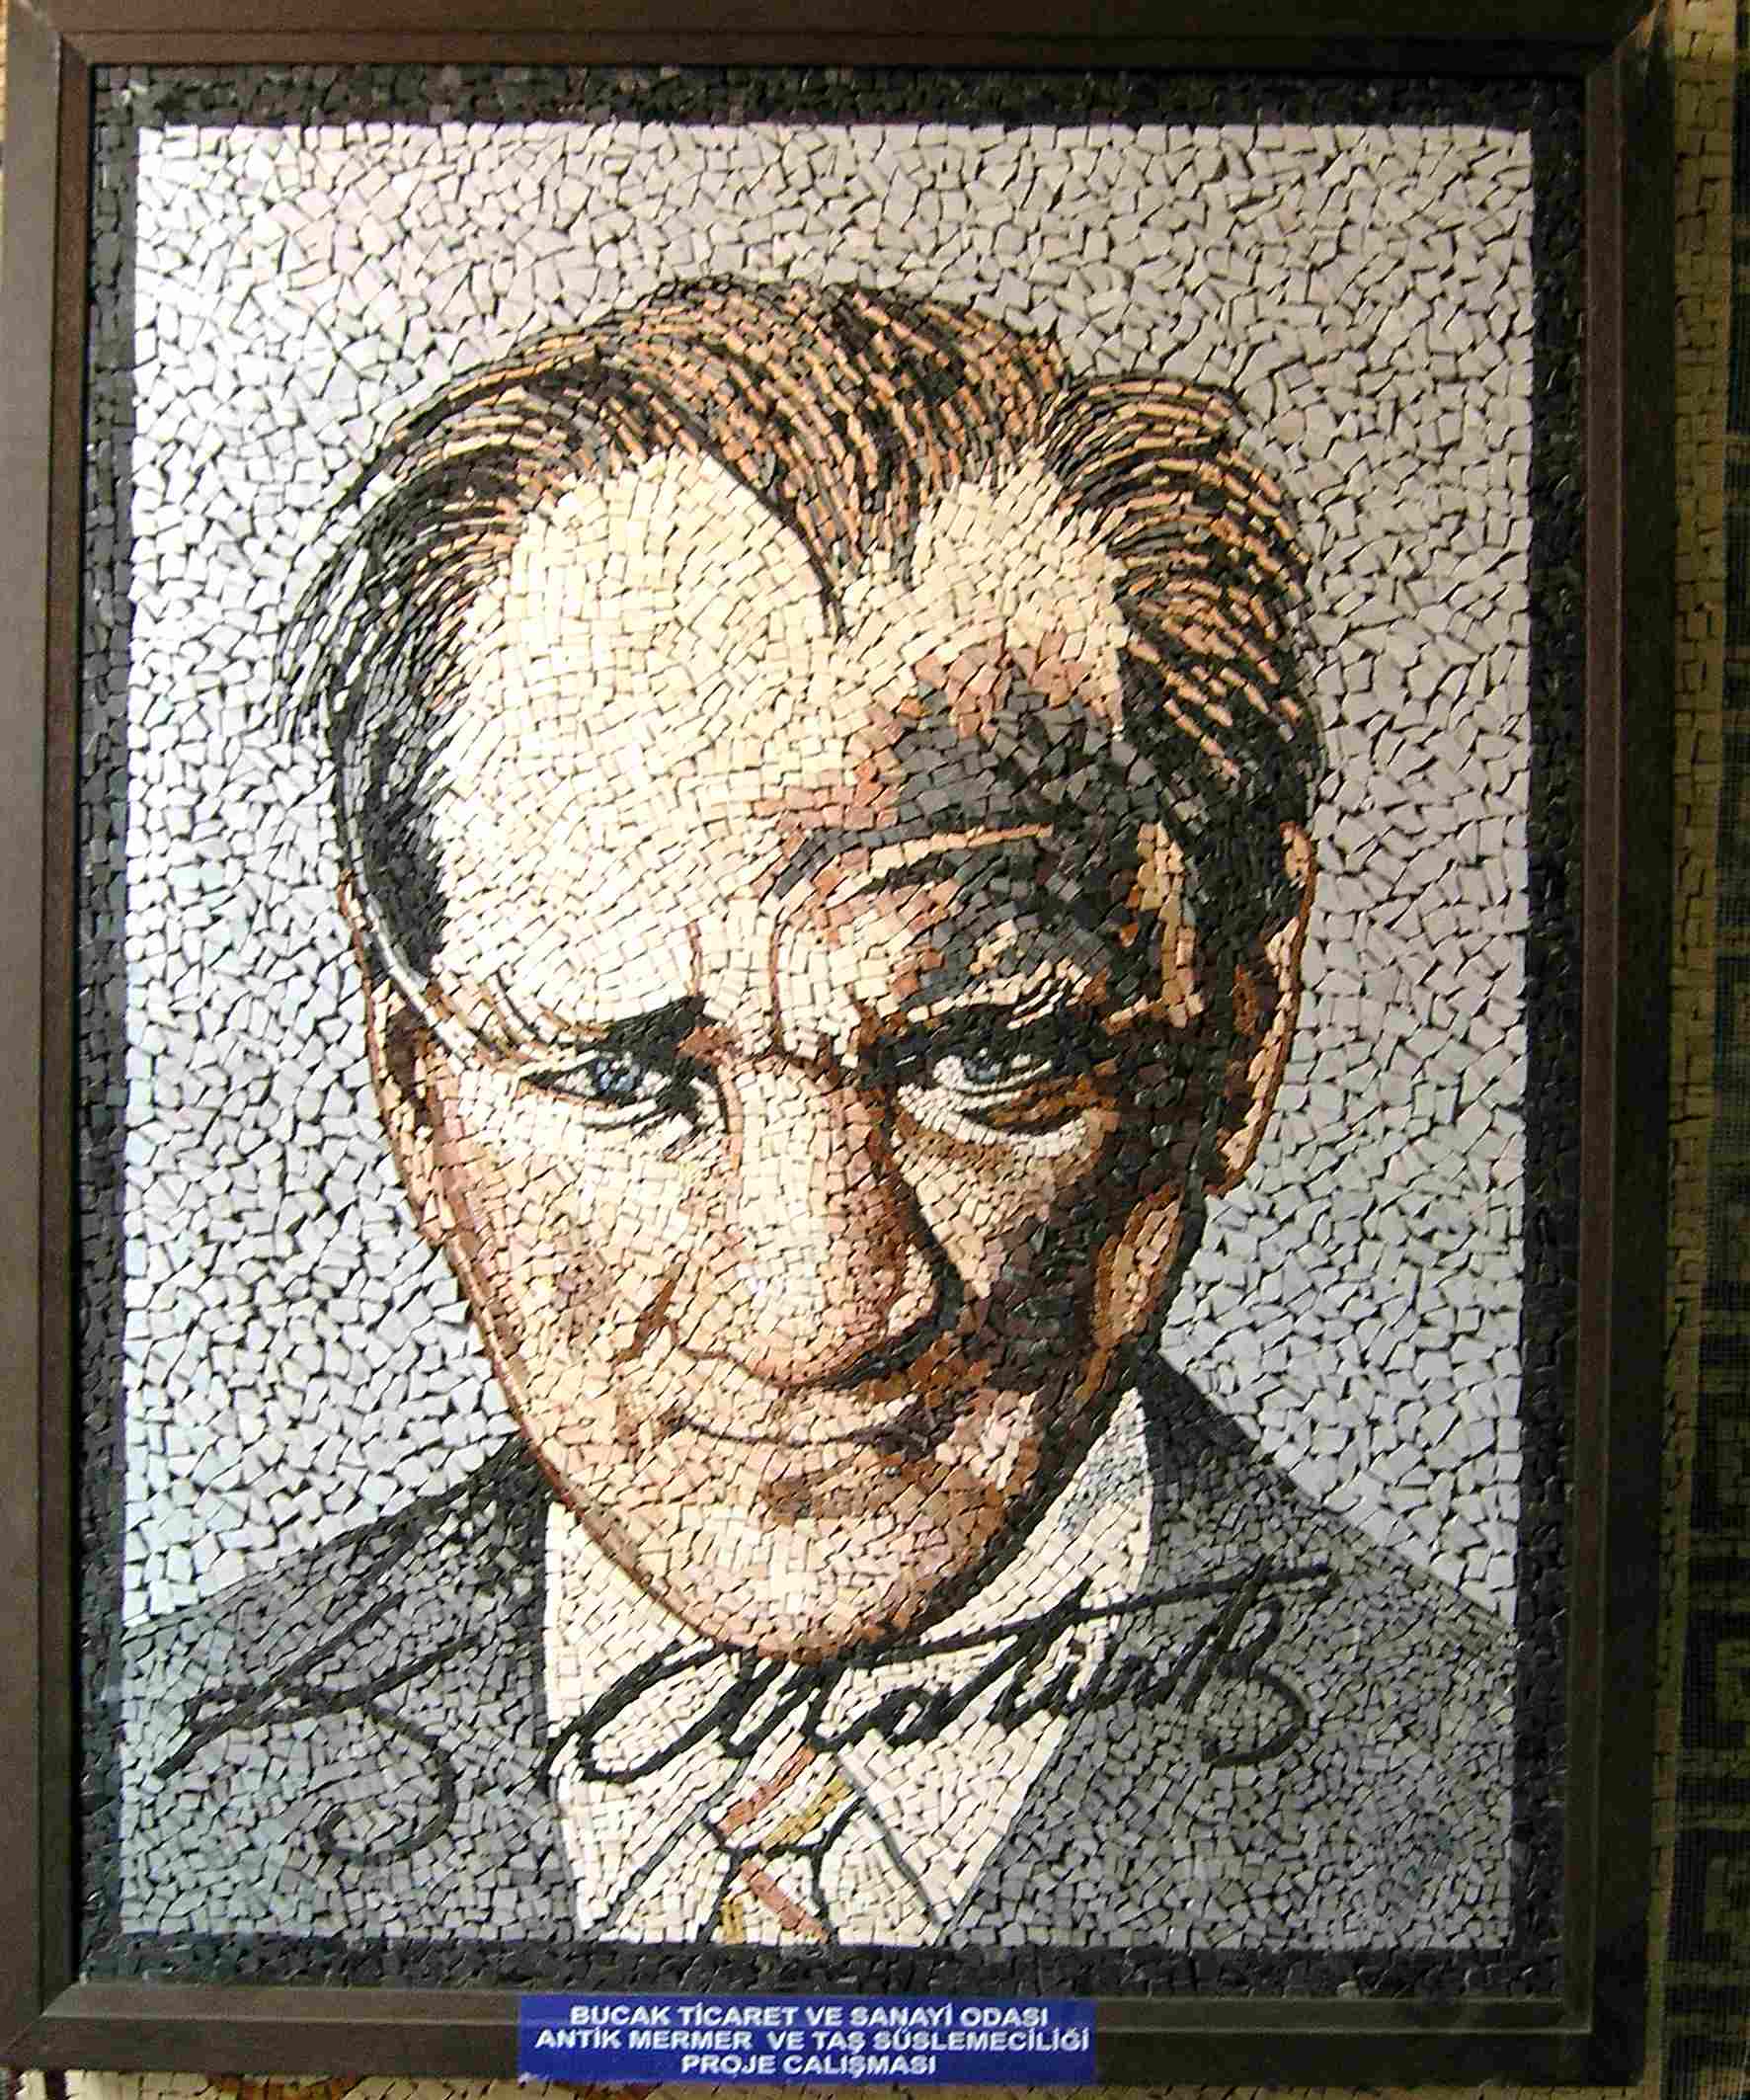 Mosaic Portrait